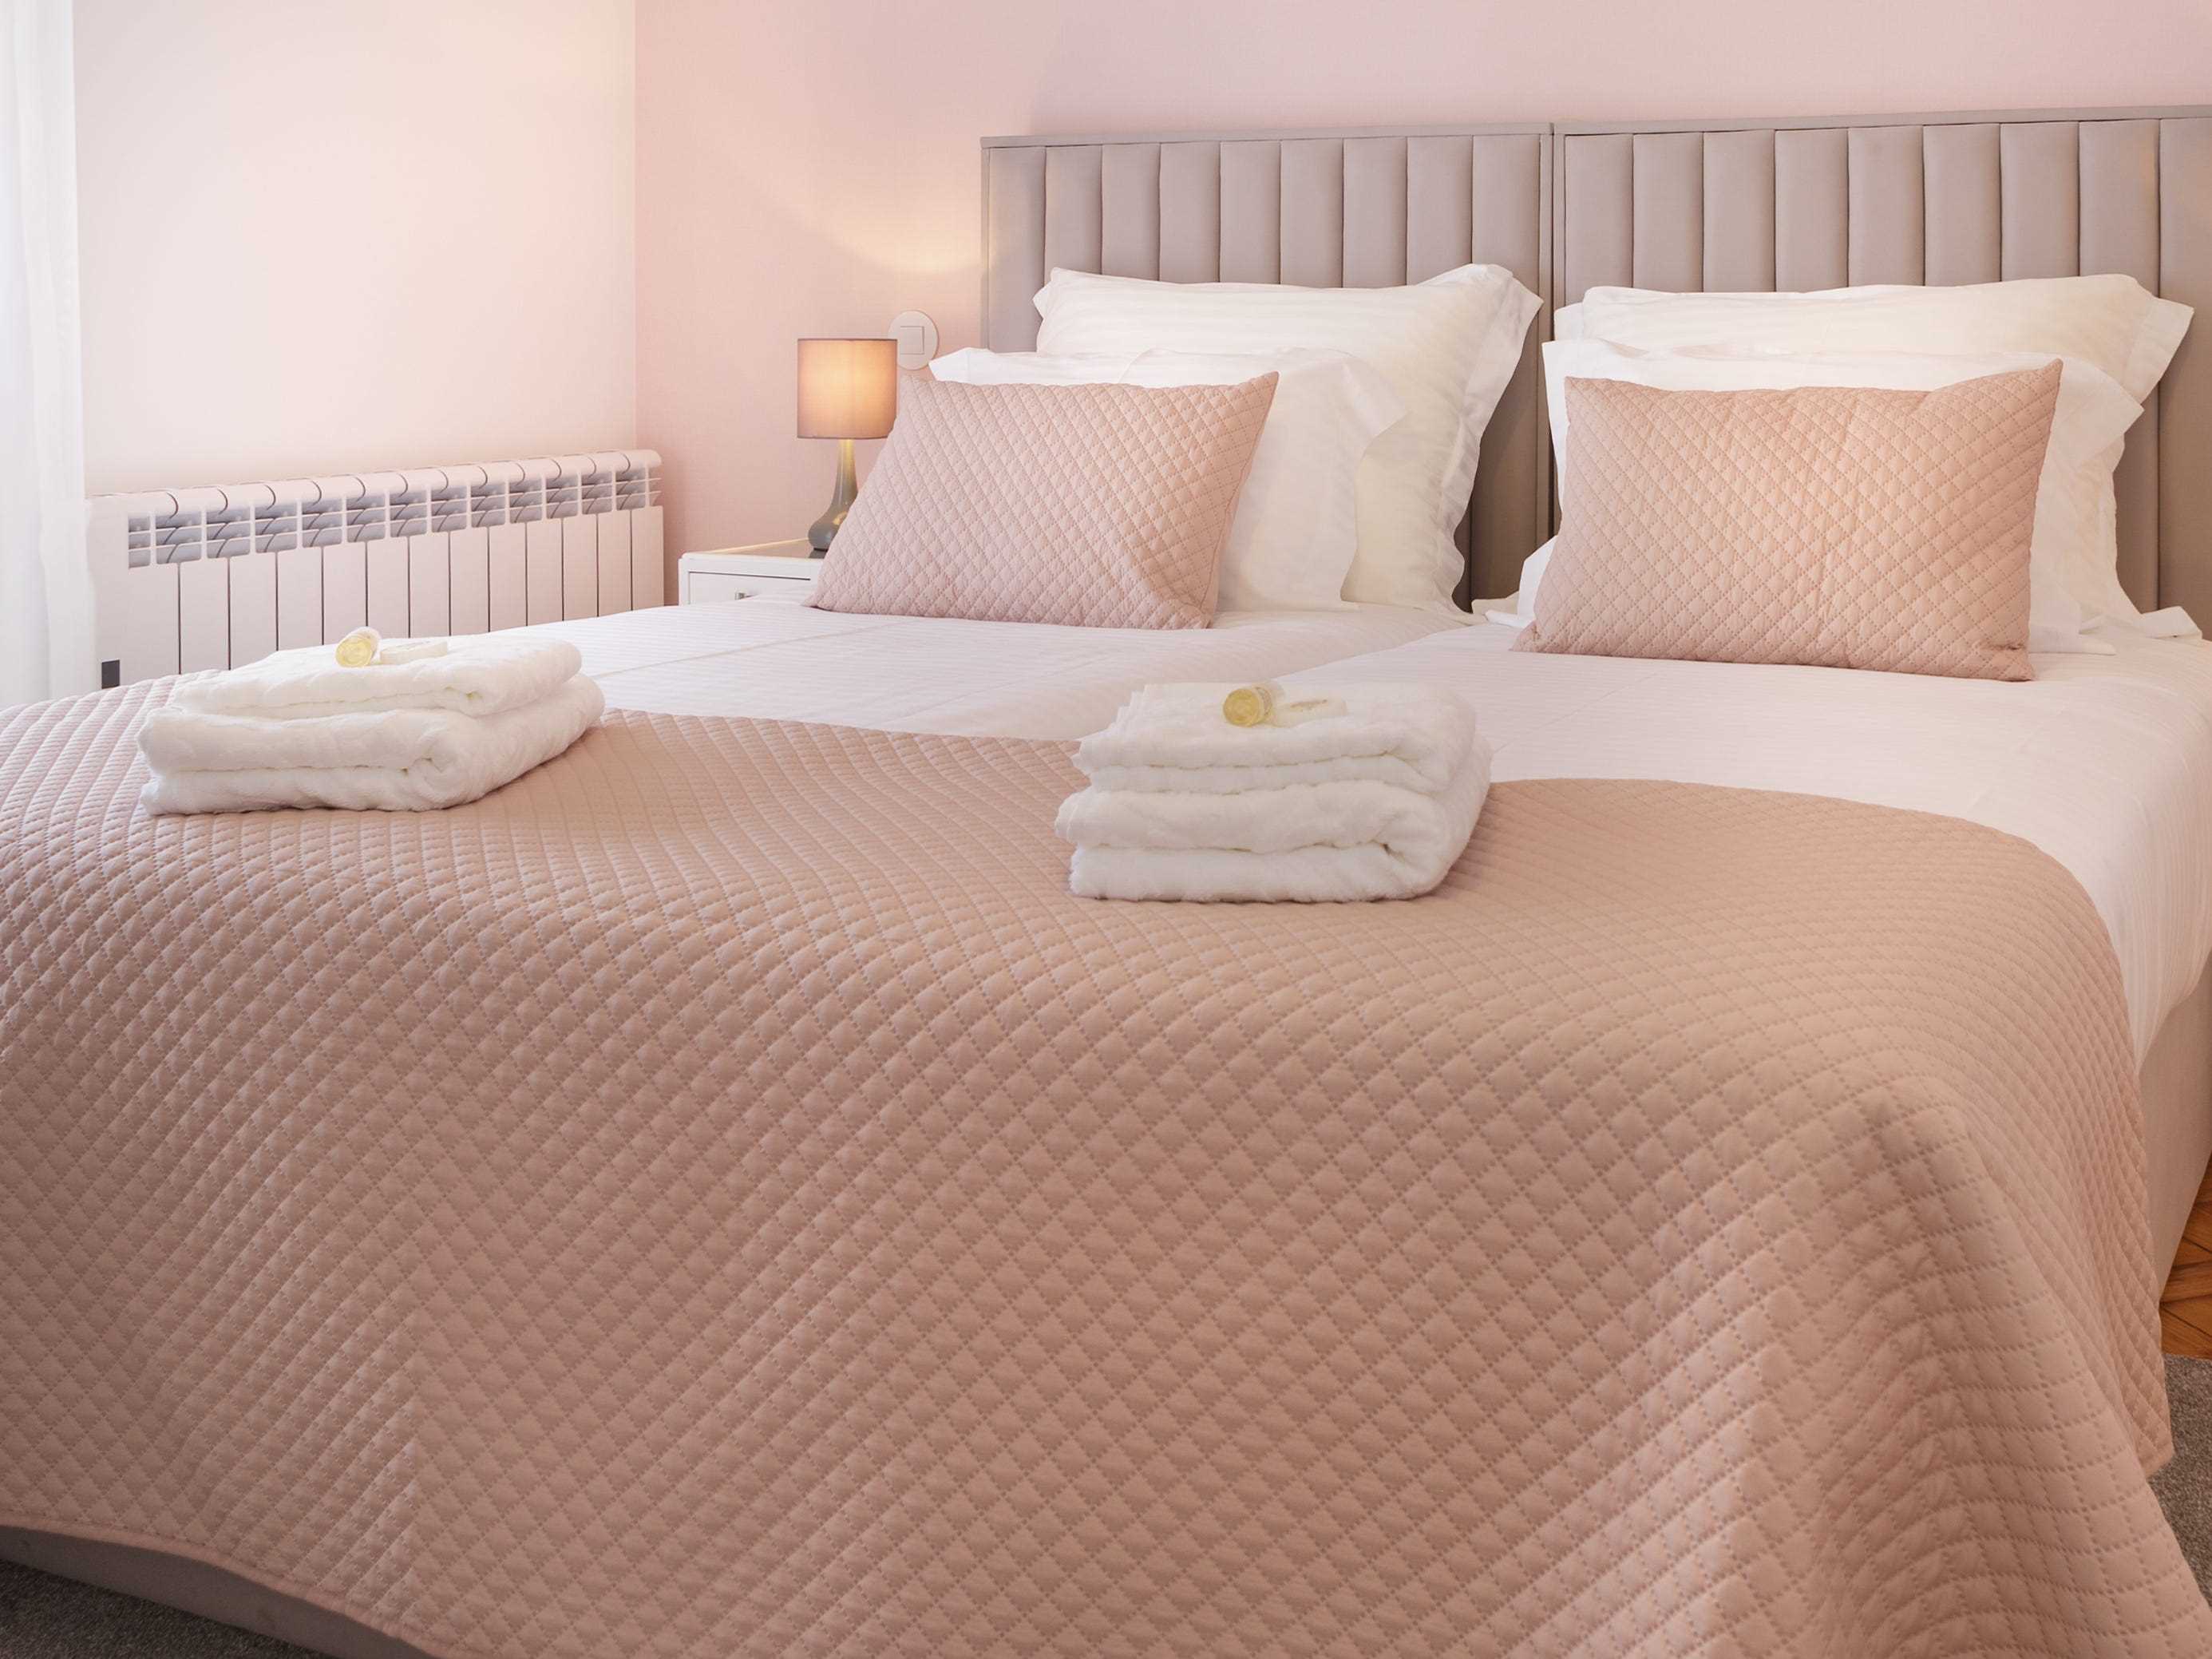 Rosa und weiße Laken auf Queensize-Bett im Zimmer mit rosafarbenen Wänden und weißen Vorhängen